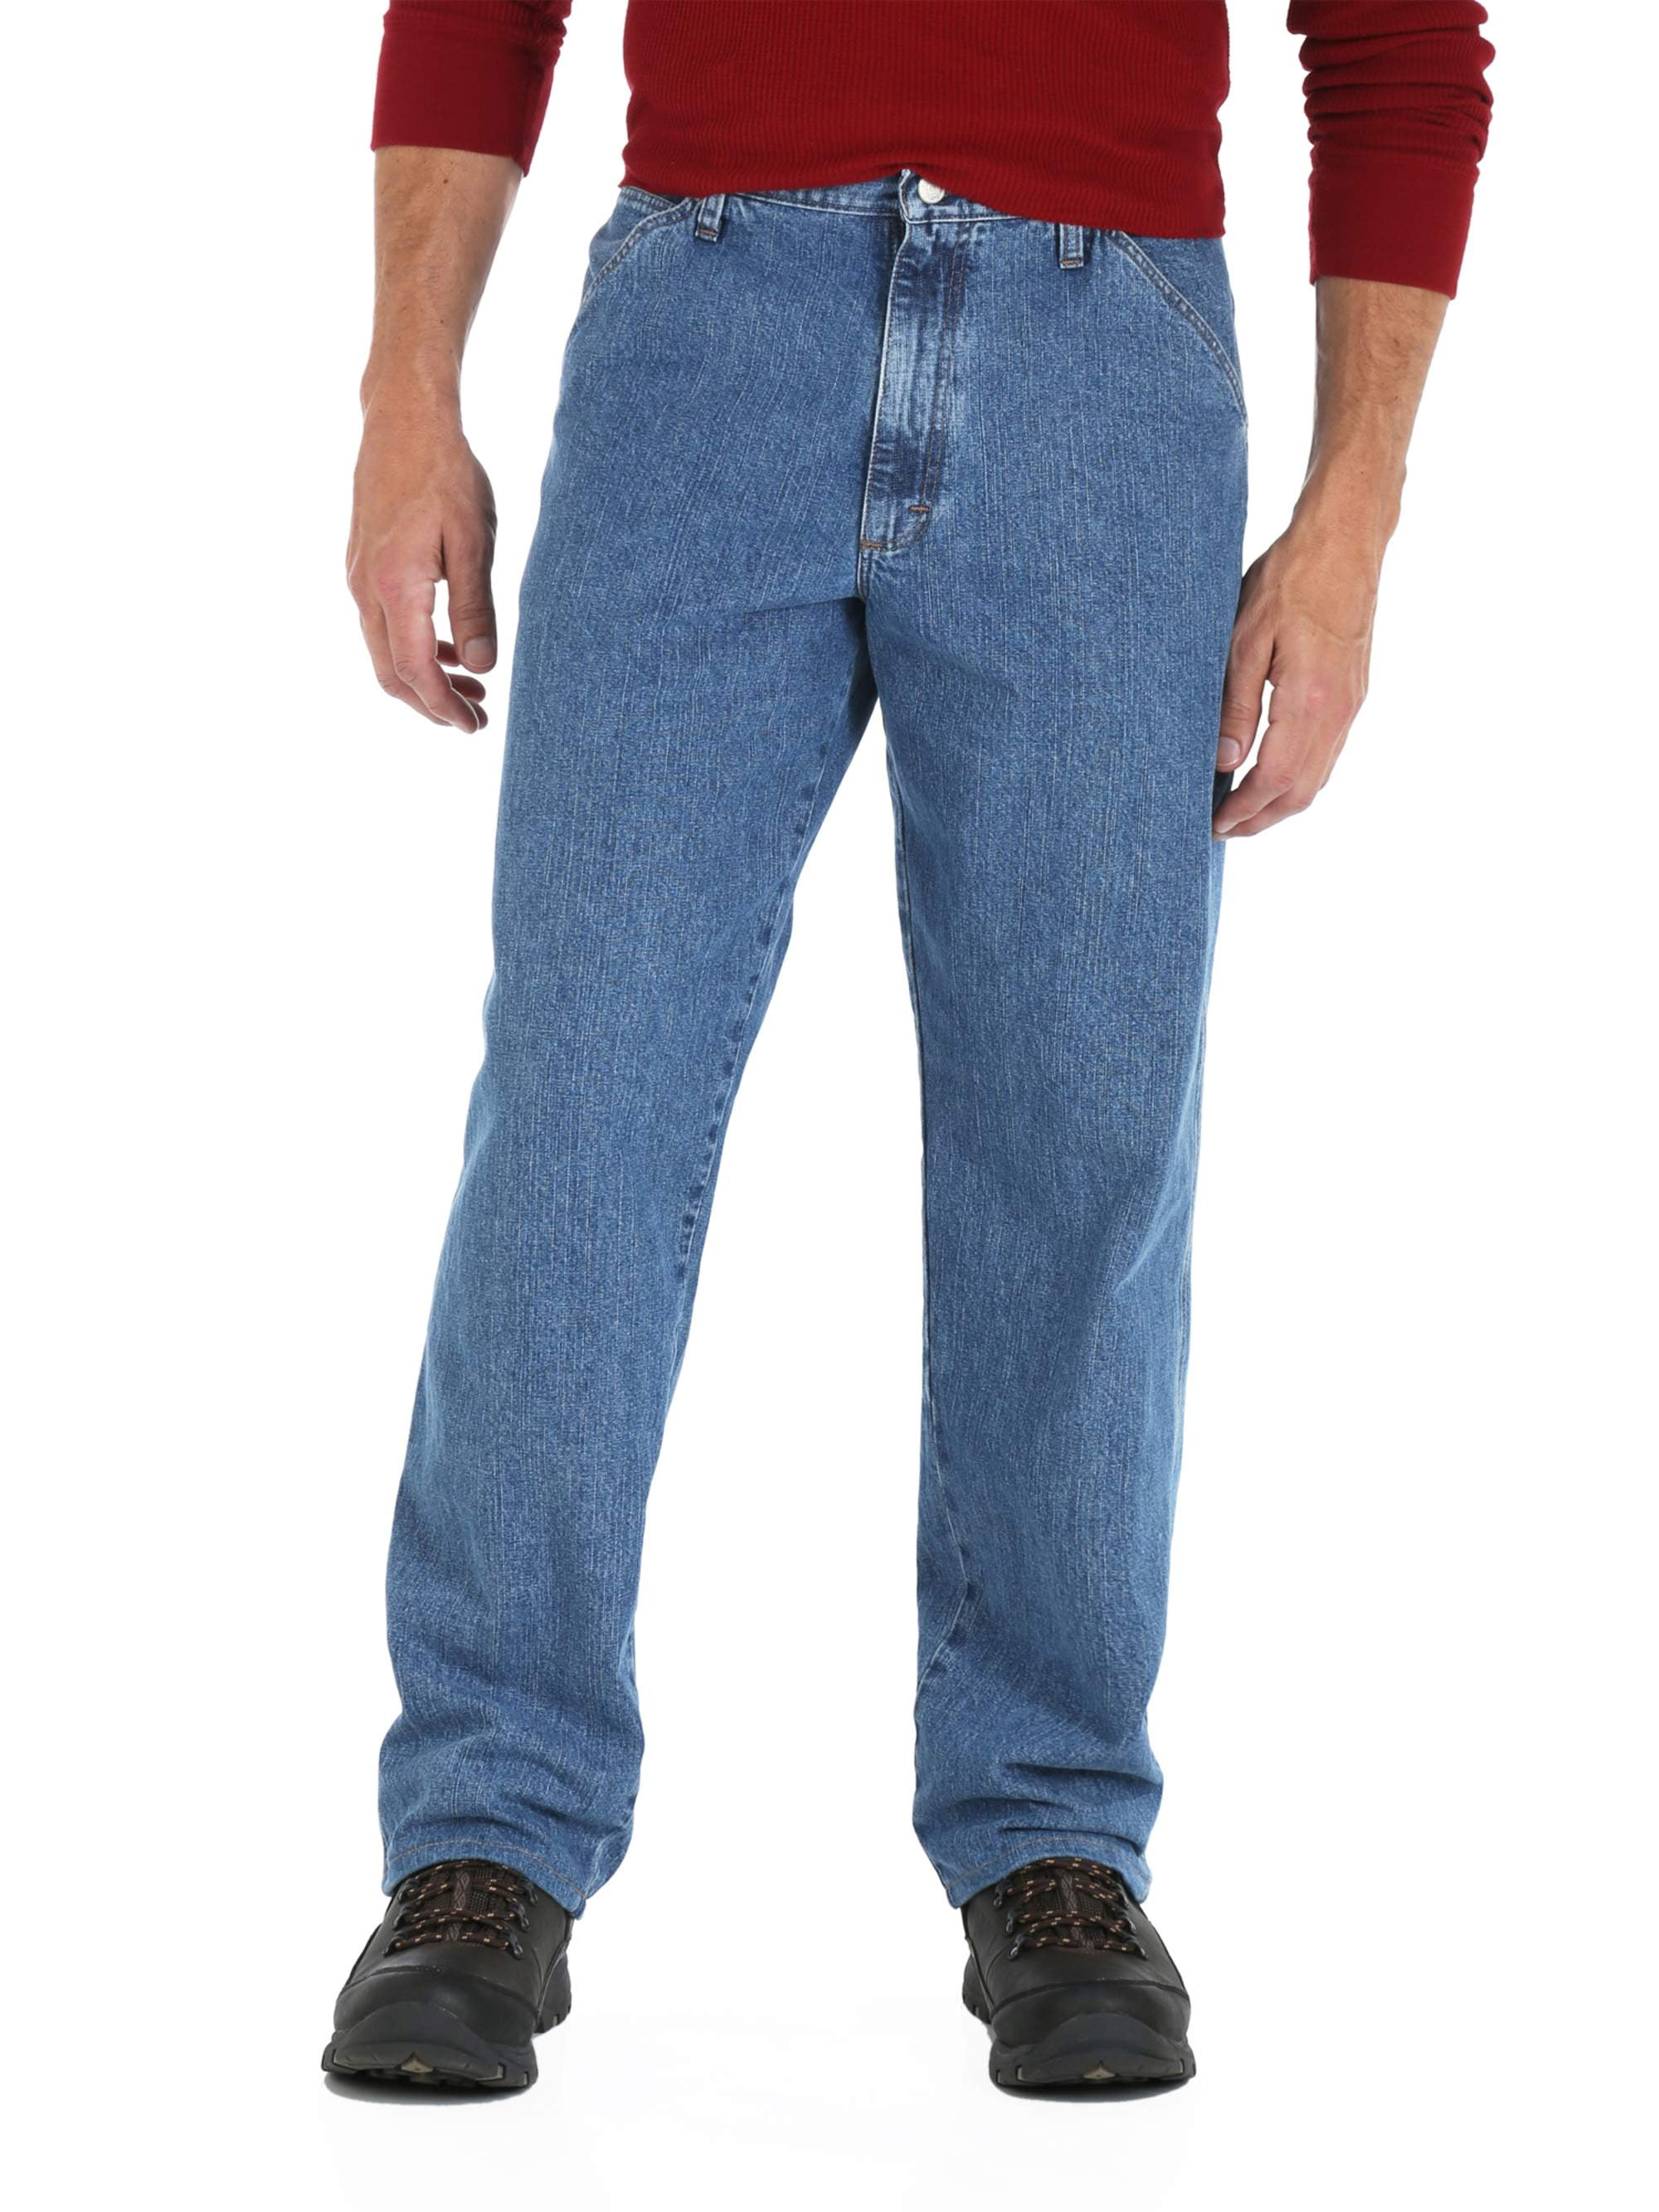 Buy > walmart mens wrangler jeans > in stock